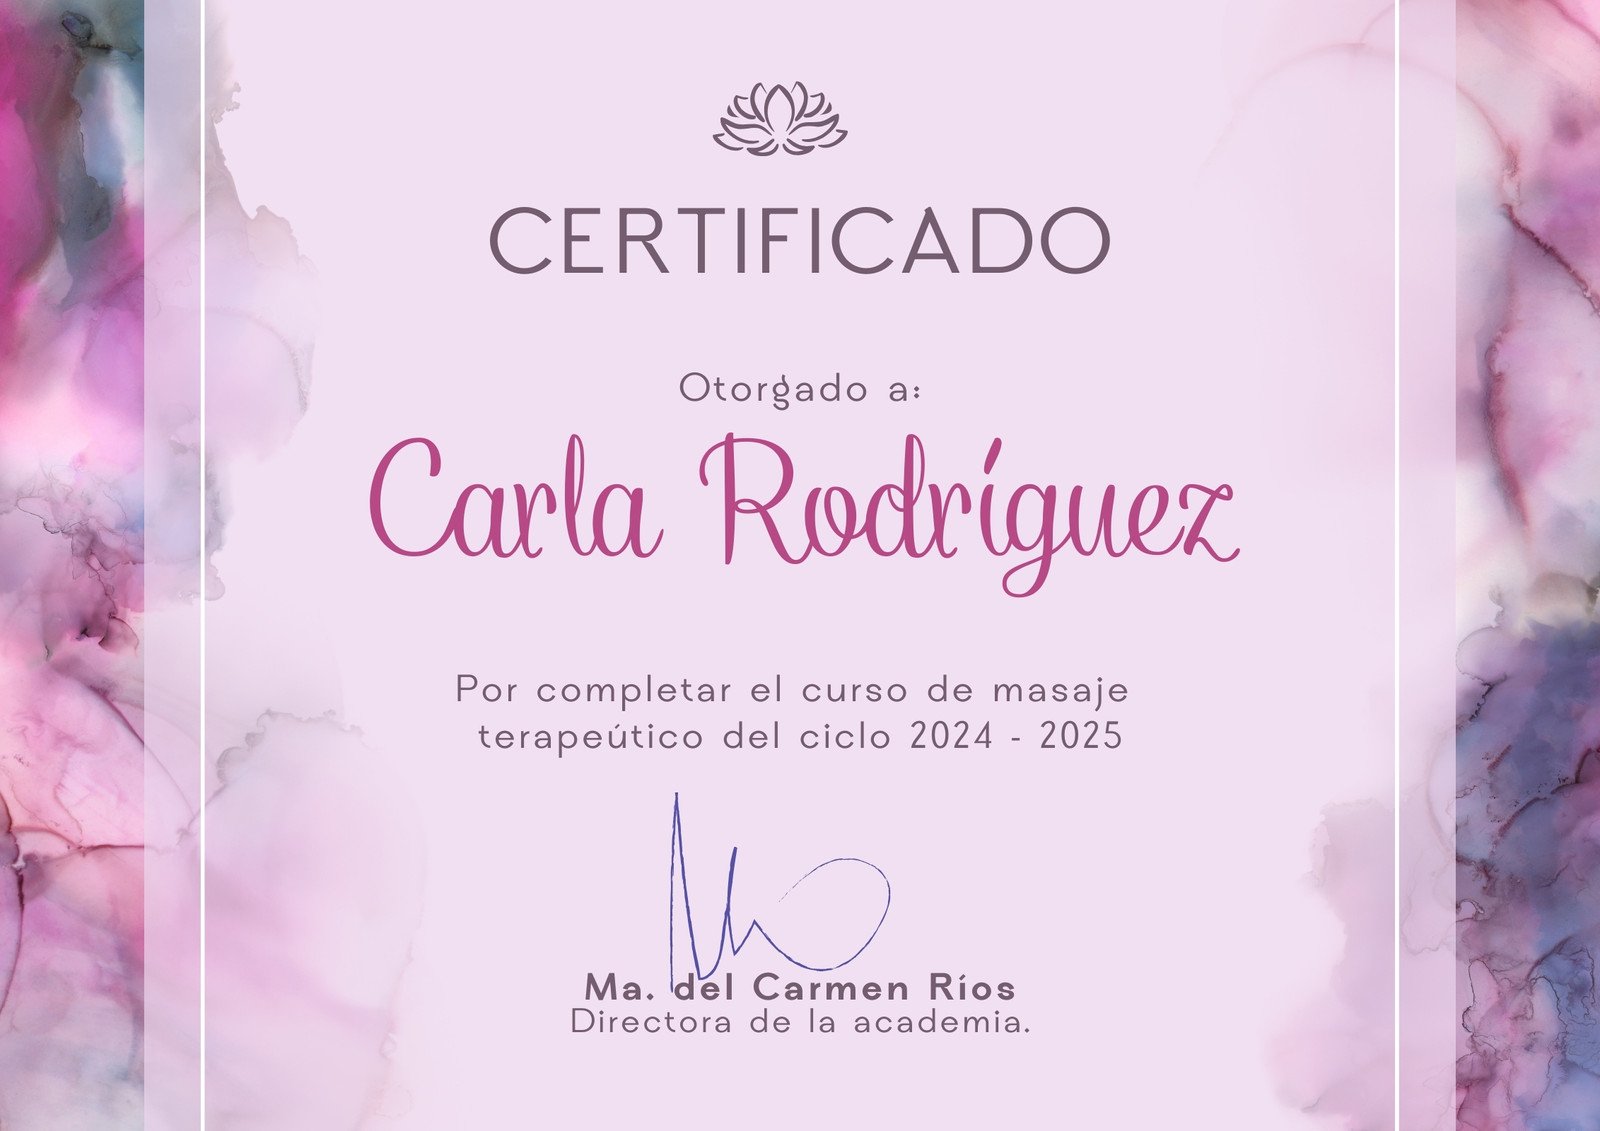 Certificado de curso femenino violeta